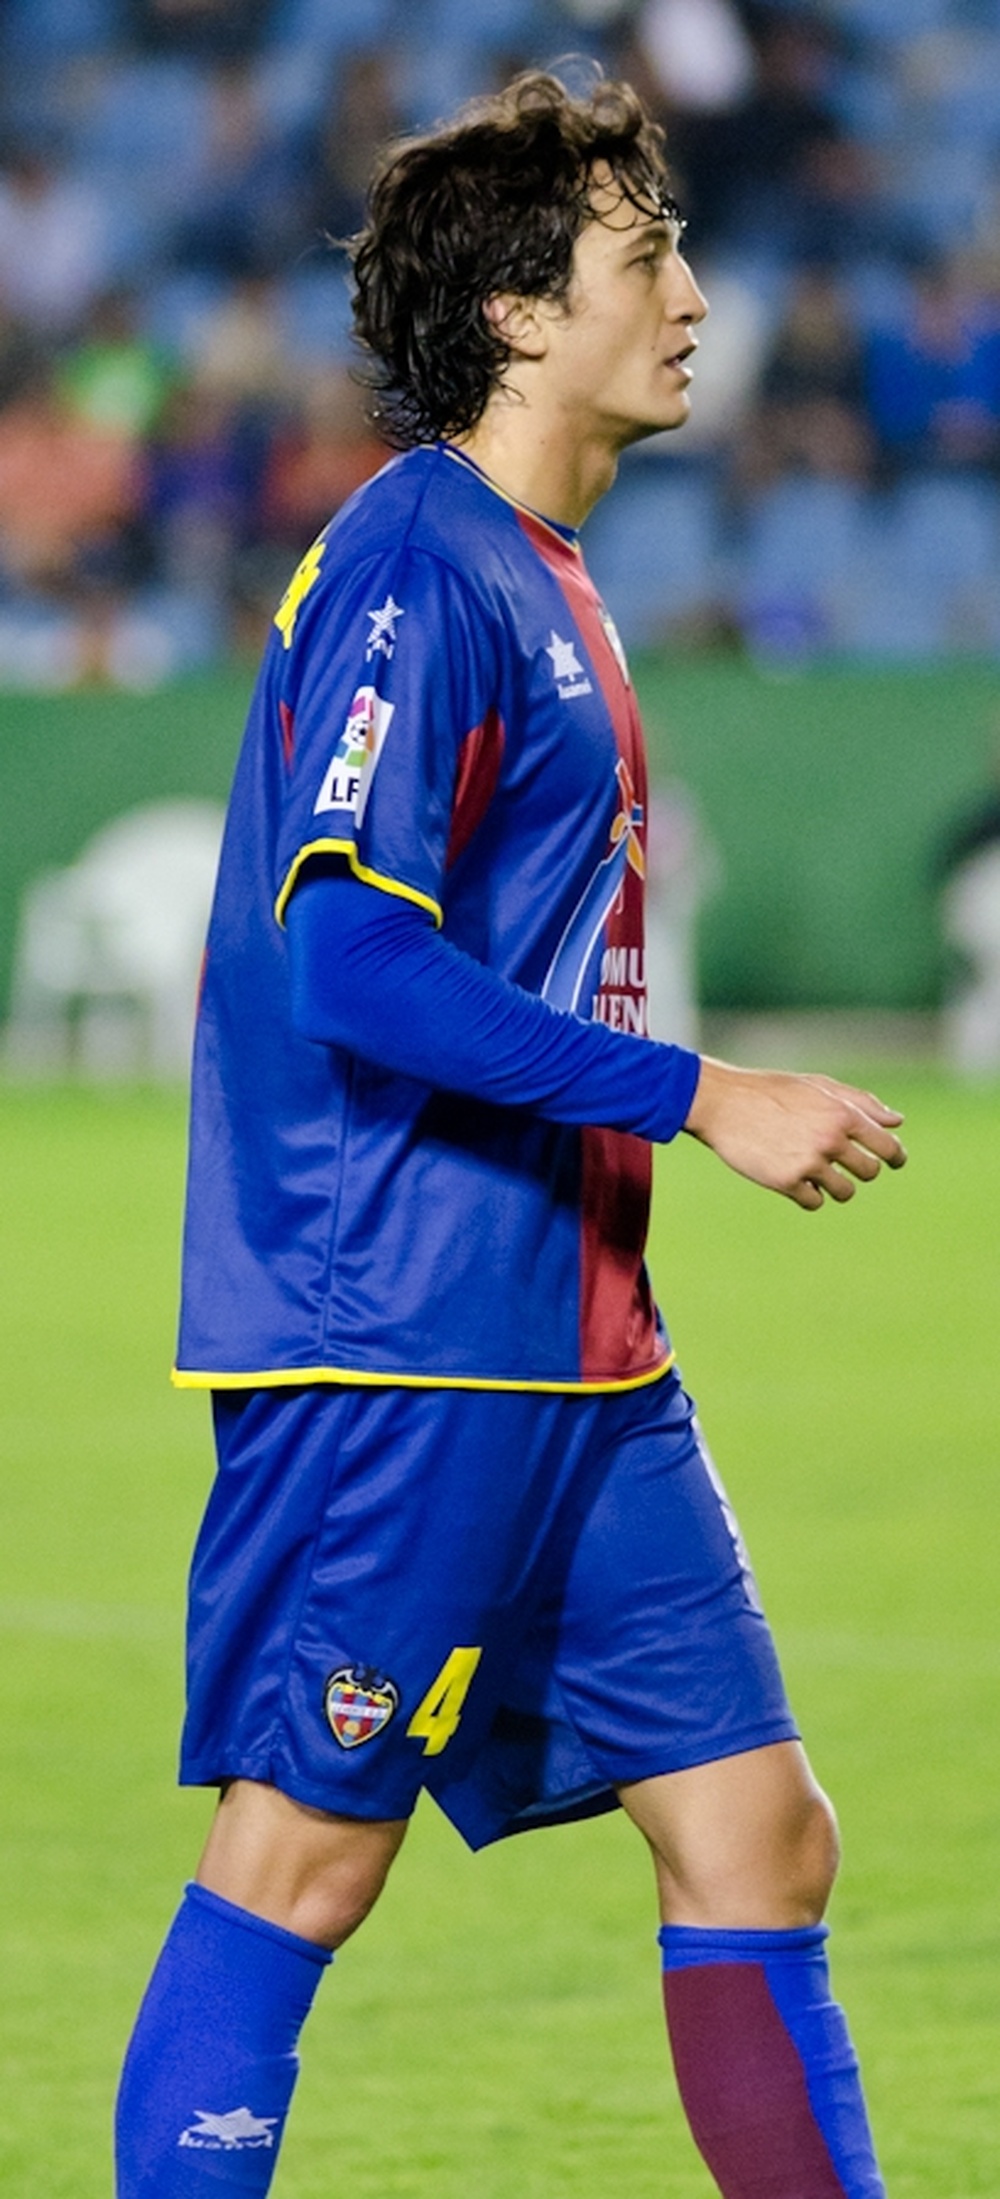 Héctor Rodas, en un encuentro con el Levante. Carlos_rm (Flickr)